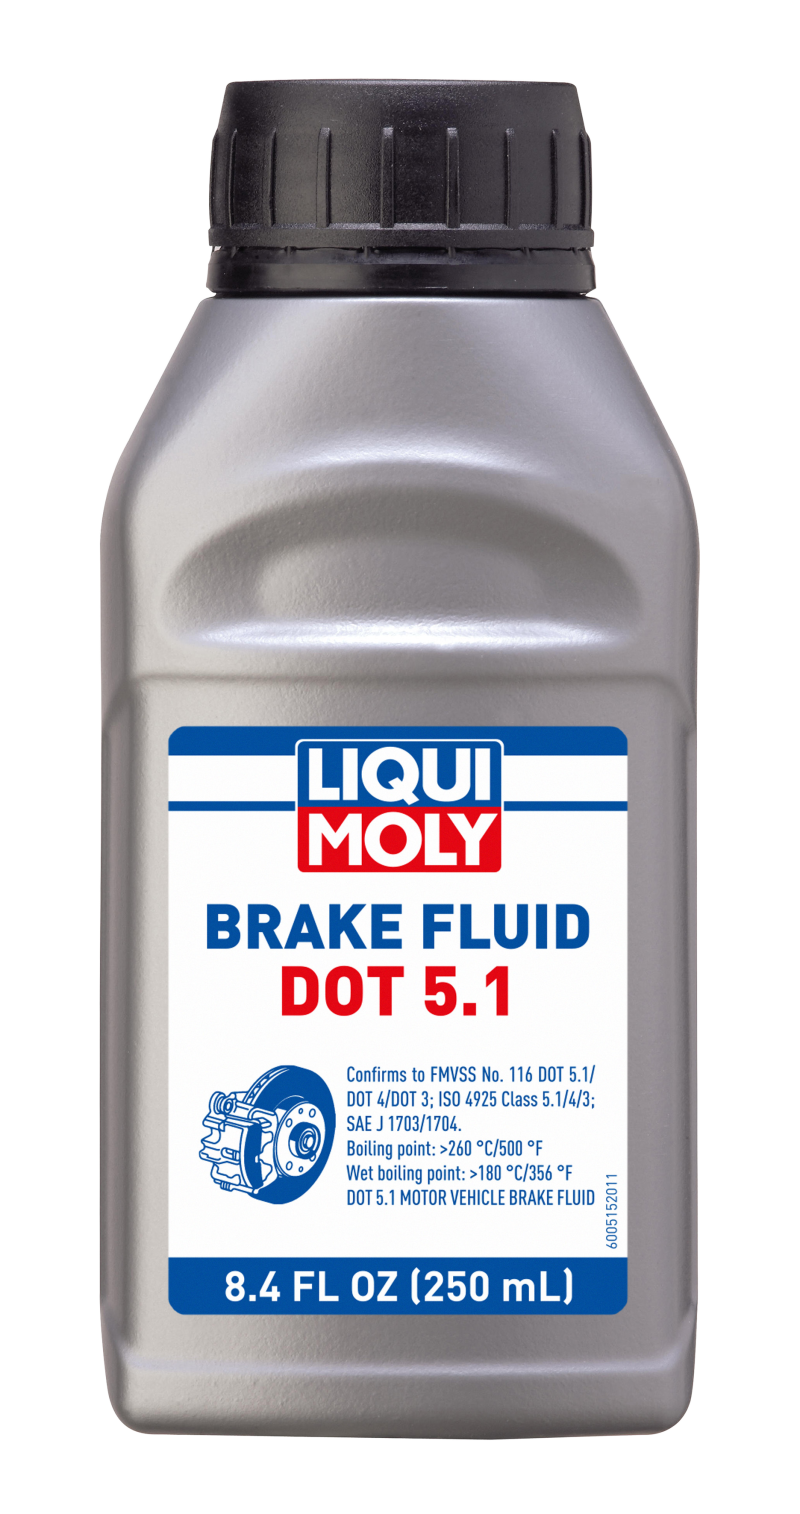 LIQUI MOLY 250mL Brake Fluid DOT 5.1 - Single